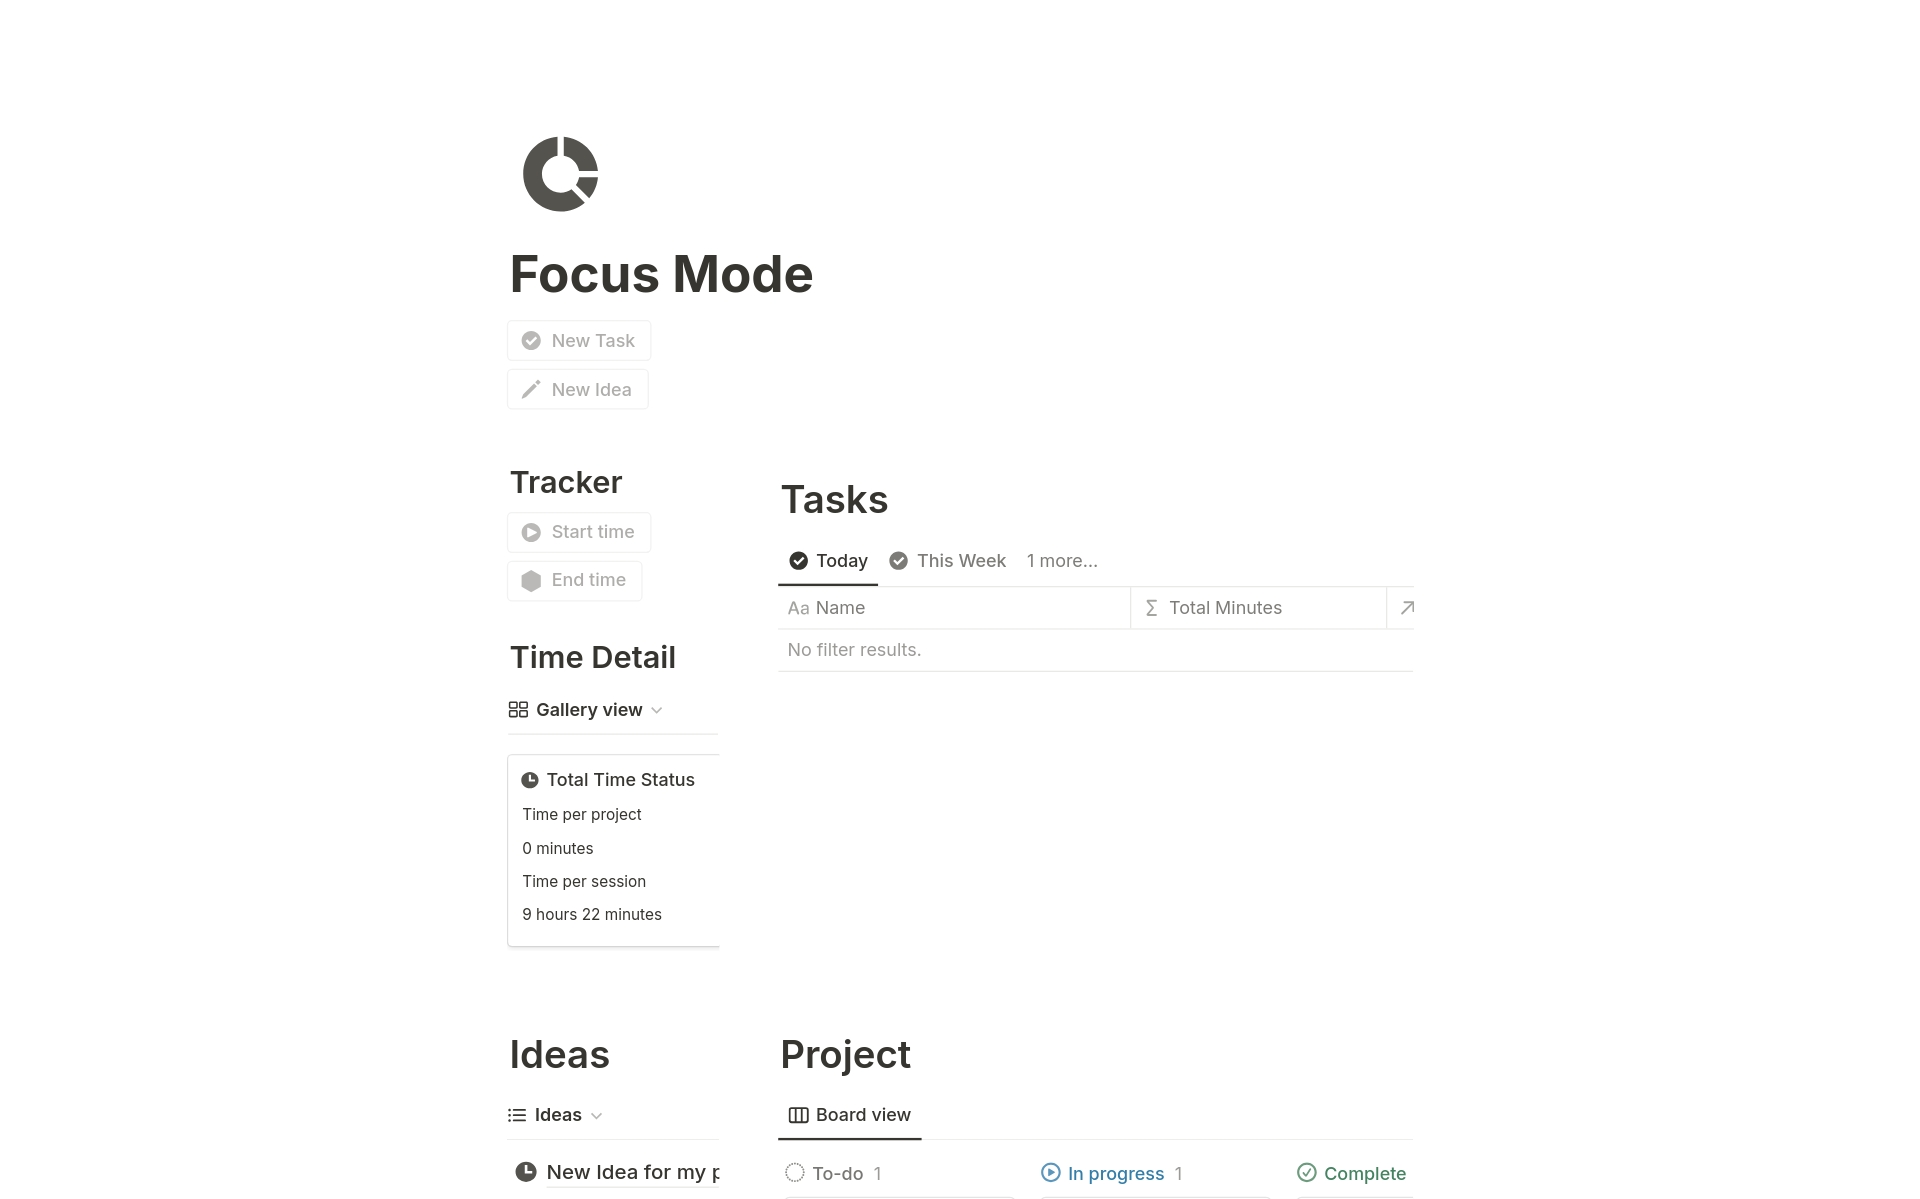 Aperçu du modèle de Focus Mode 